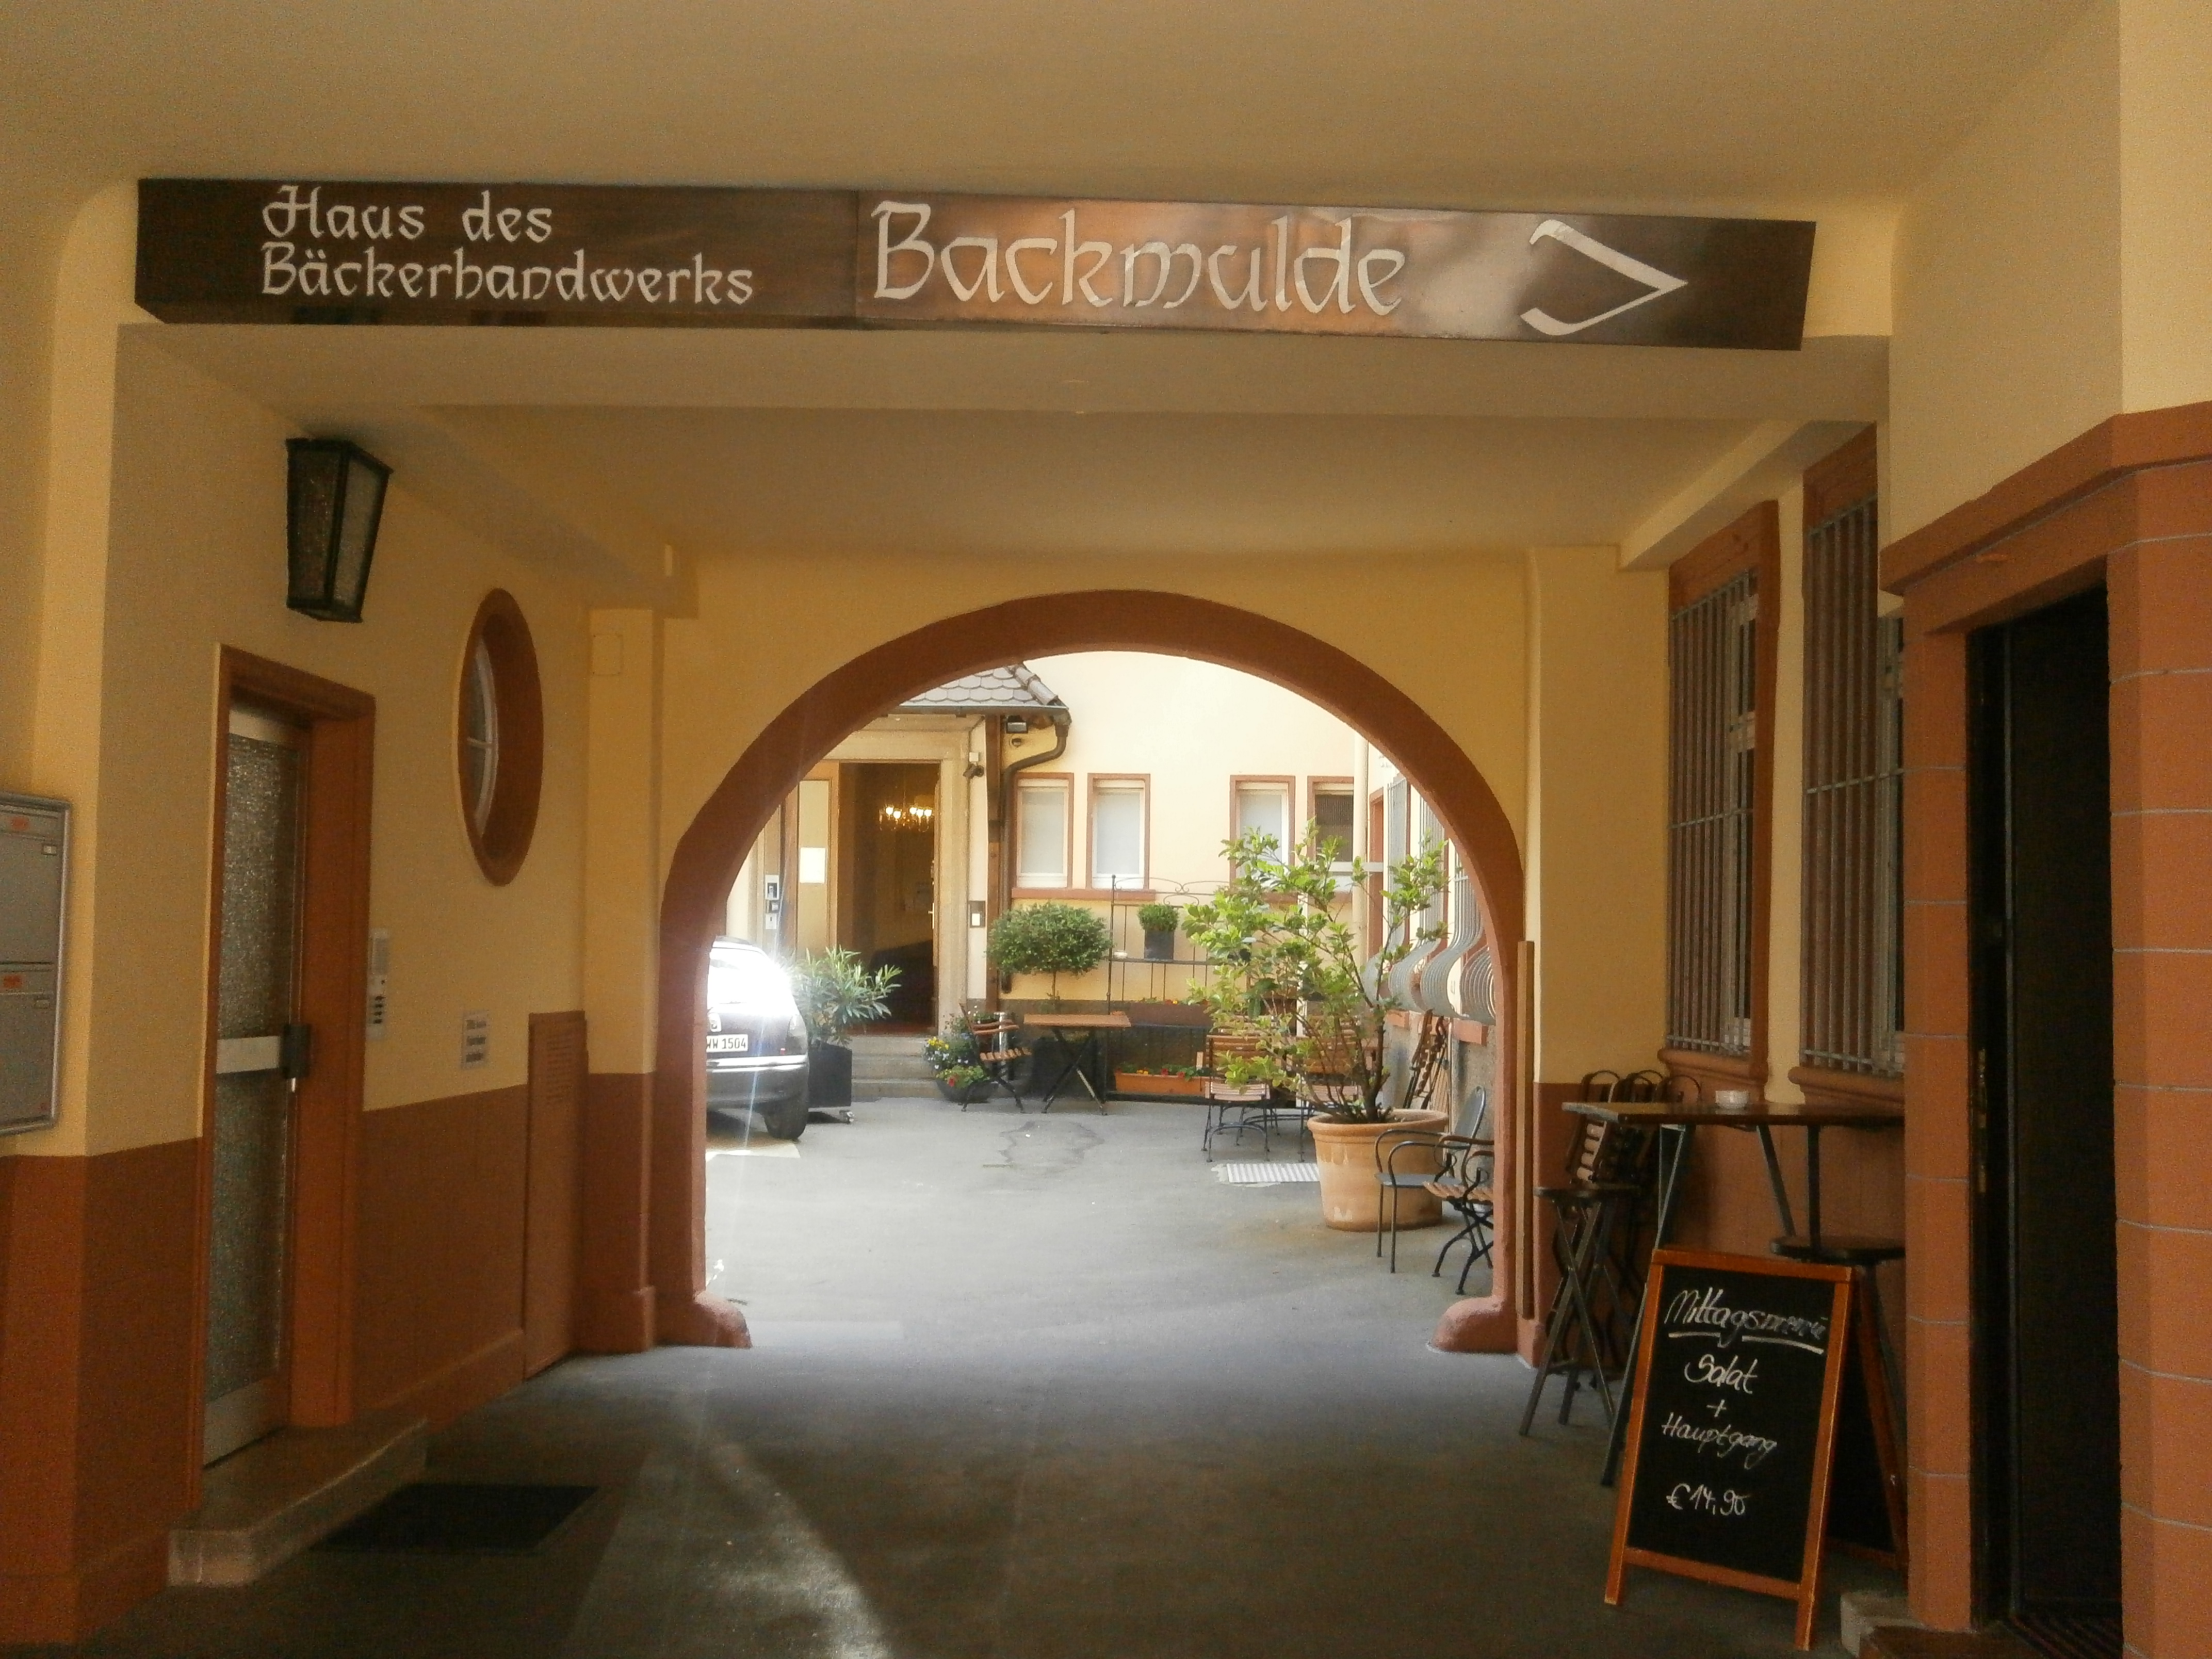 Bild 3 Backmulde Gasthaus Zepf und Schneider GmbH in Heidelberg